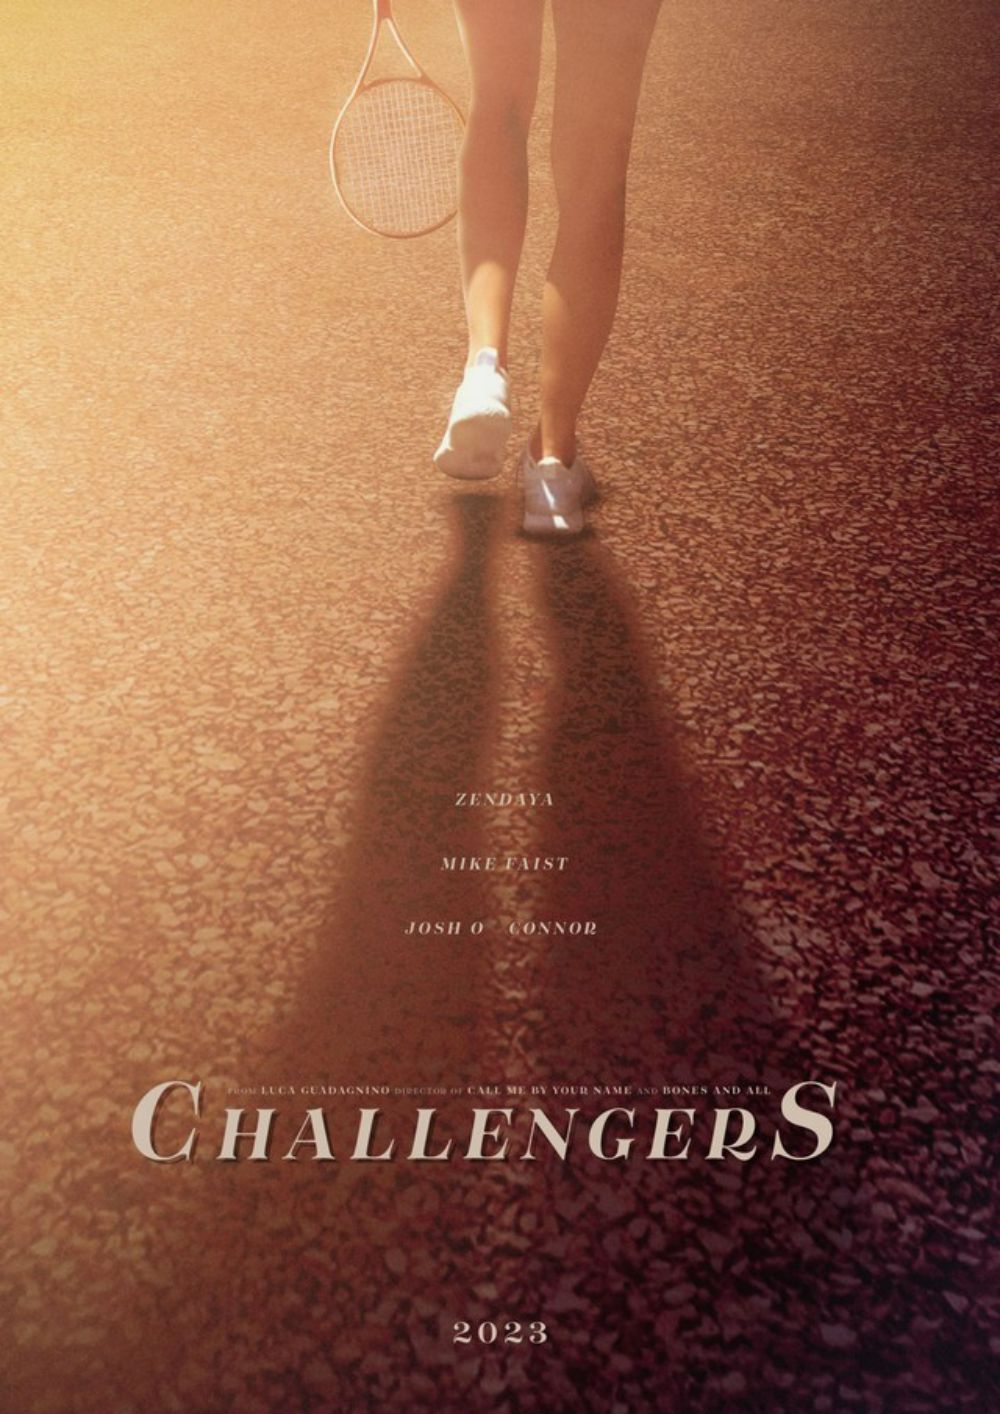 Challengers - Những Kẻ Thách Đấu là phim hài - chính kịch thể thao lãng mạn chuẩn bị ra mắt với sự tham gia của nữ diễn viên Zendaya